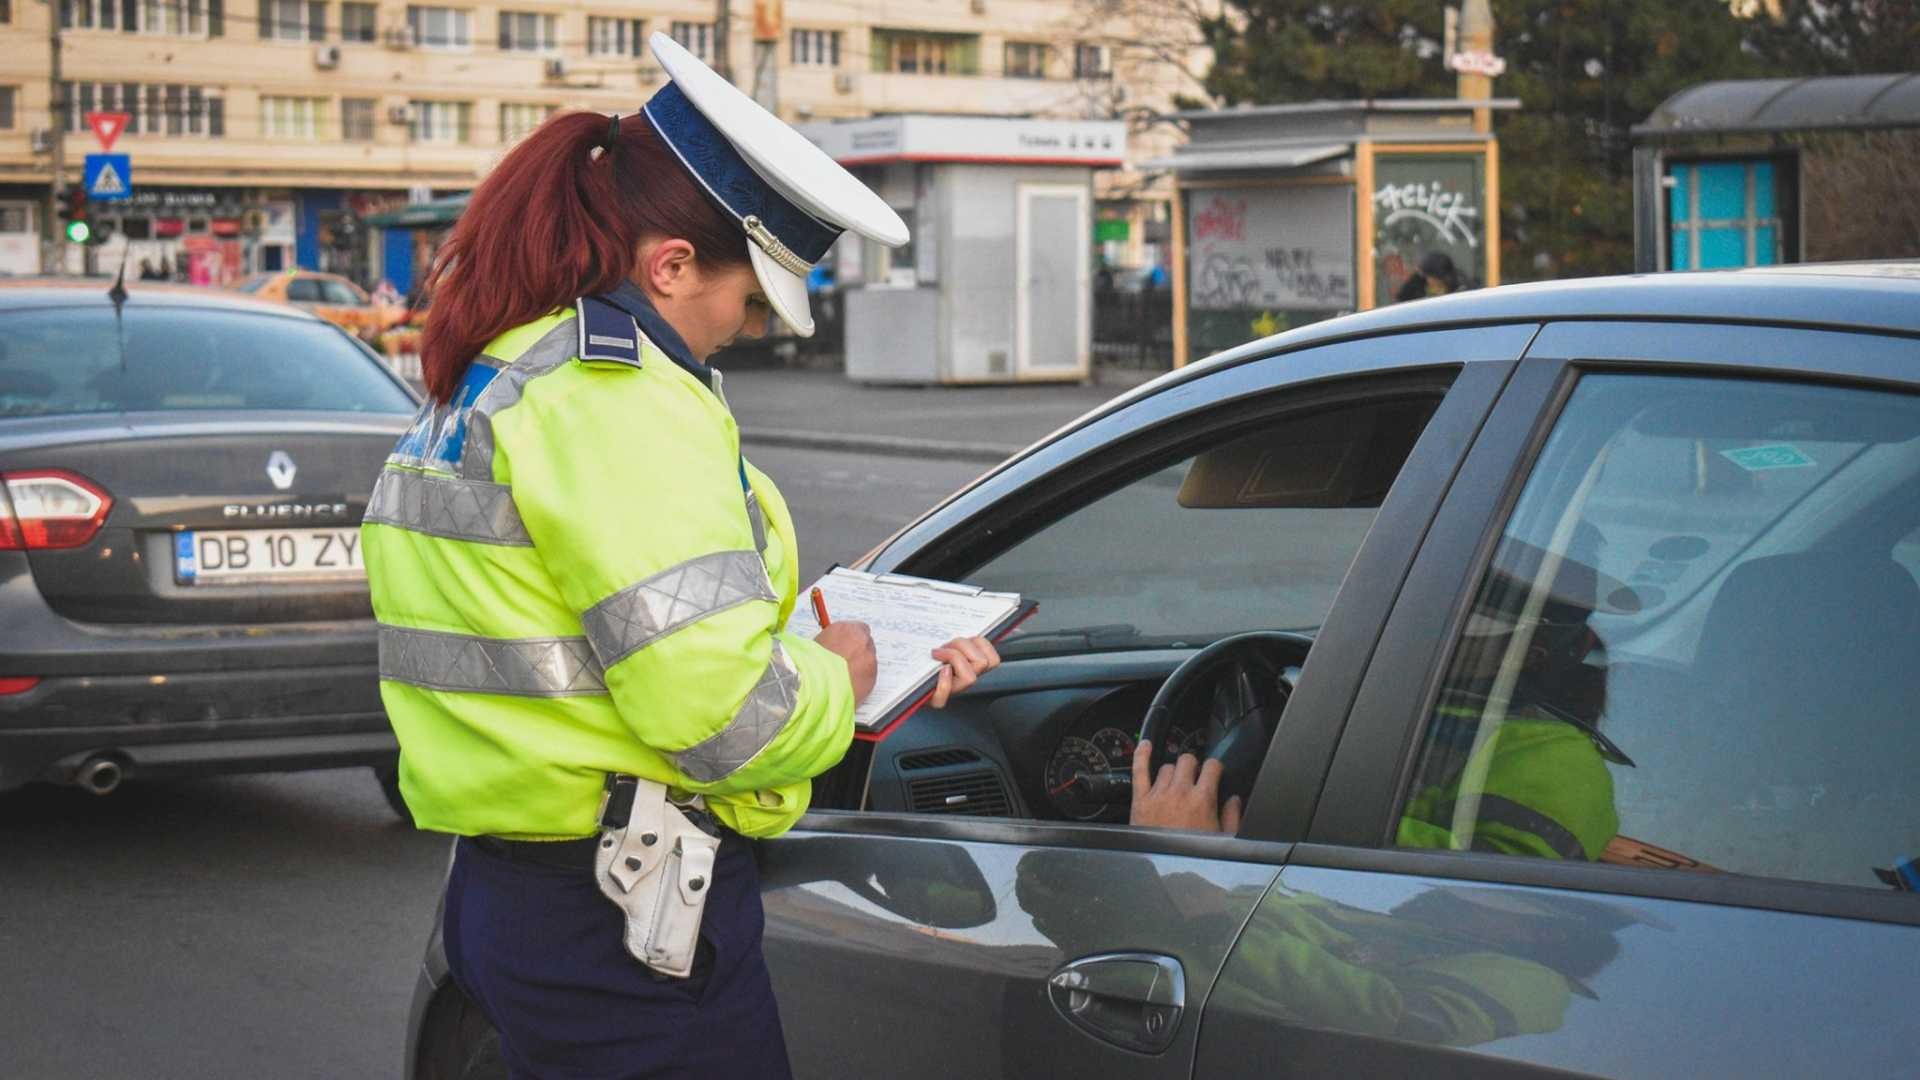 Şofer sub influenţa alcoolului, blocat în trafic de poliţişti după ce a tamponat o maşină